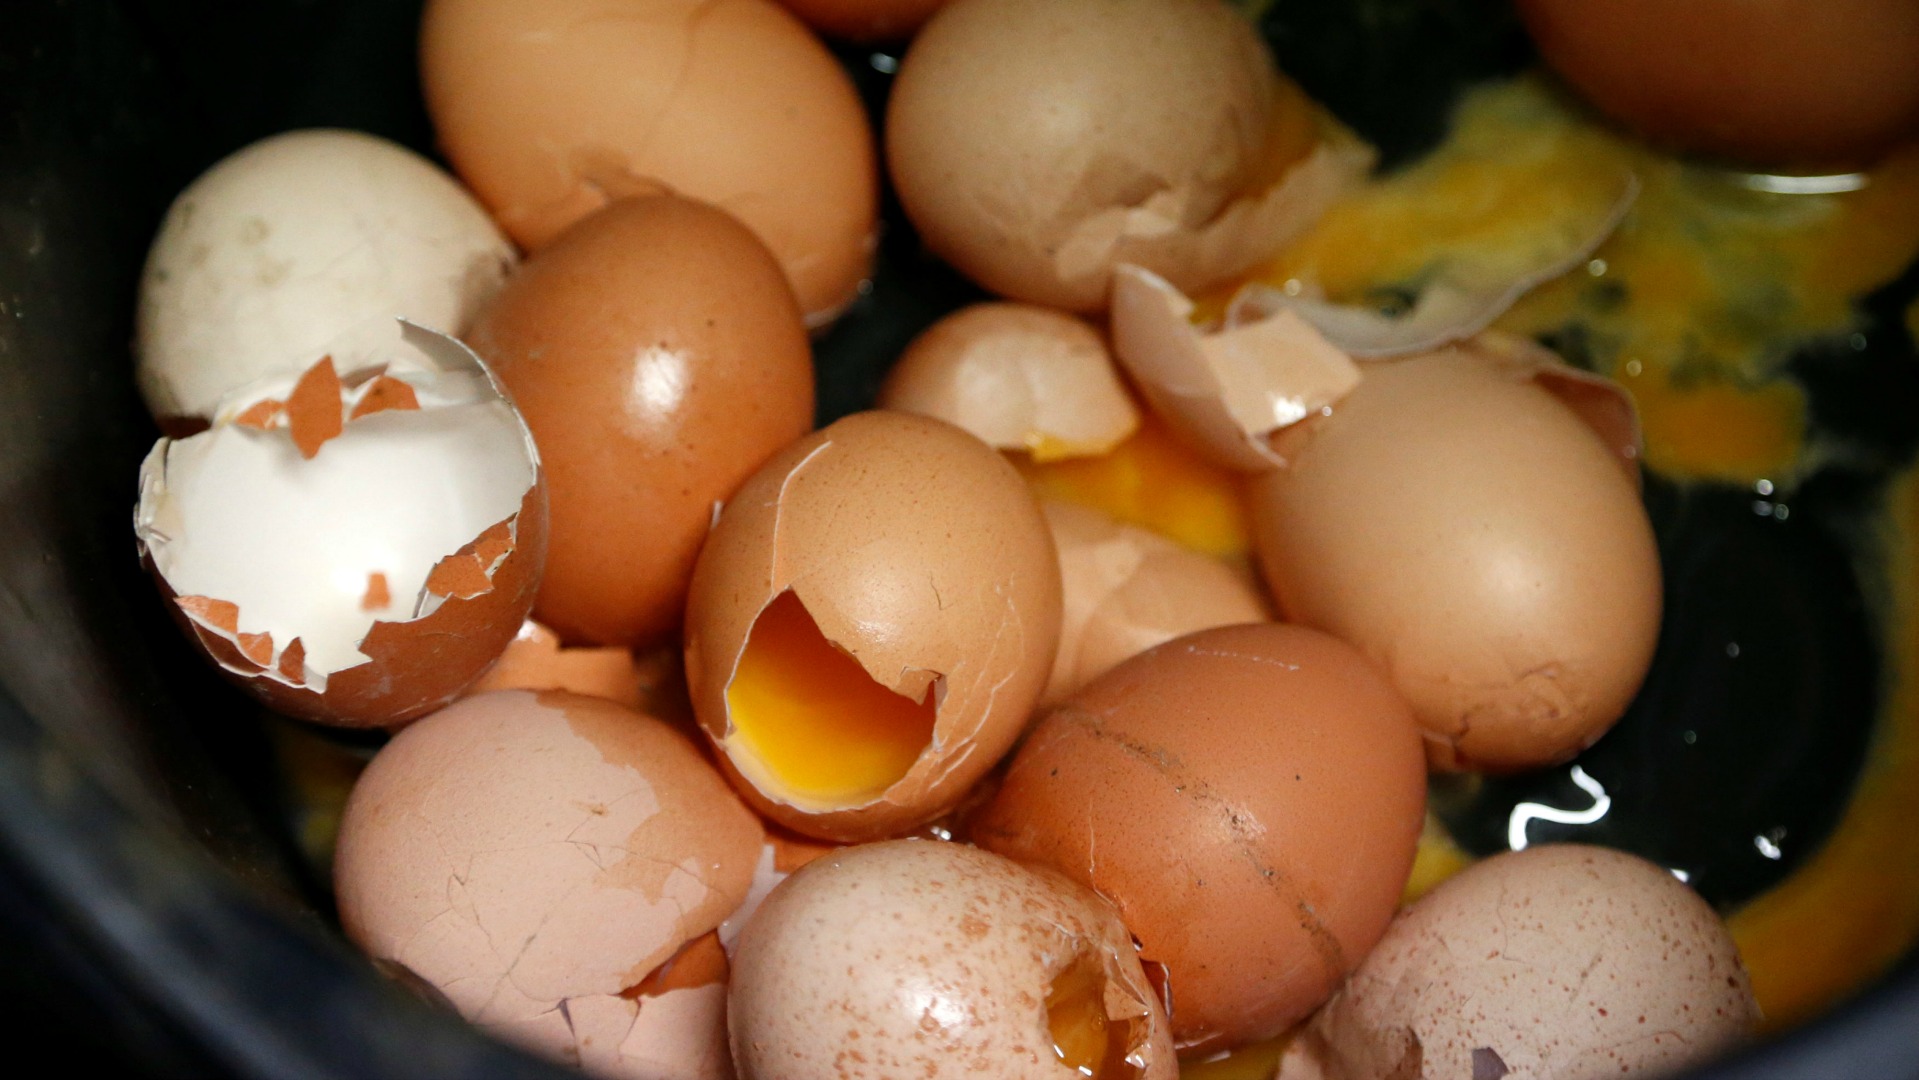 Bélgica denuncia que el gobierno holandés detectó insecticida en huevos en noviembre de 2016